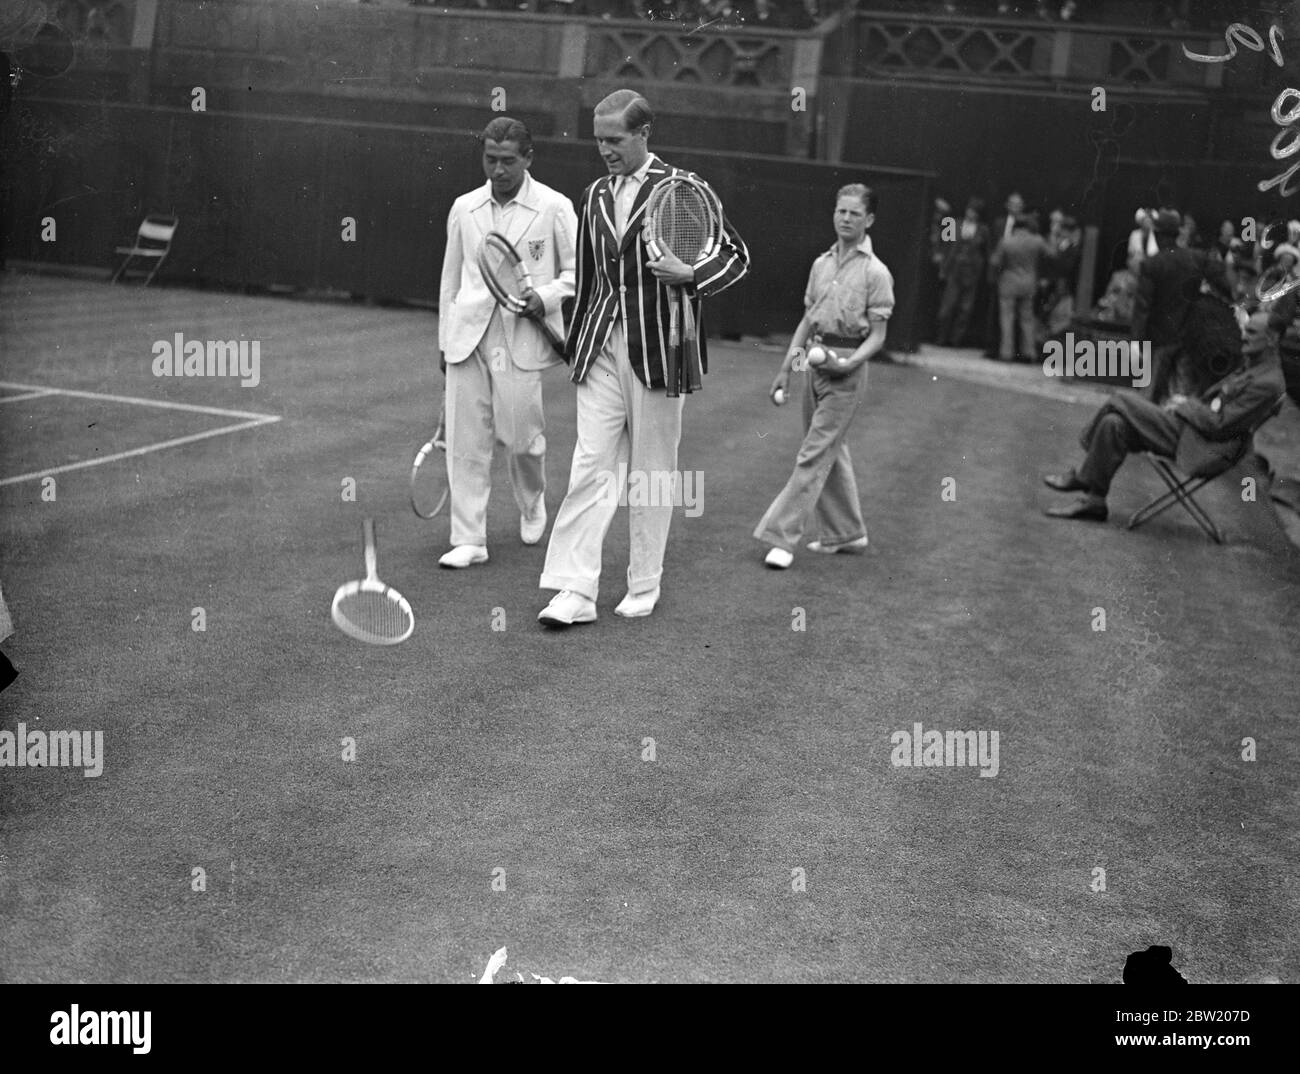 Von Cramm und Yamagishi werfen sich auf den Mittelplatz. Baron Gottfried von Cramm (Deutschland) und J Yamagishi (Japan) trafen sich in der dritten Runde der Männer-Singles am Centre Court in Wimbledon. Foto zeigt, wie Yamagishi und von Cramm sich mit einem Tennisschläger auf den Center Court werfen. 24 Juni 1937 Stockfoto